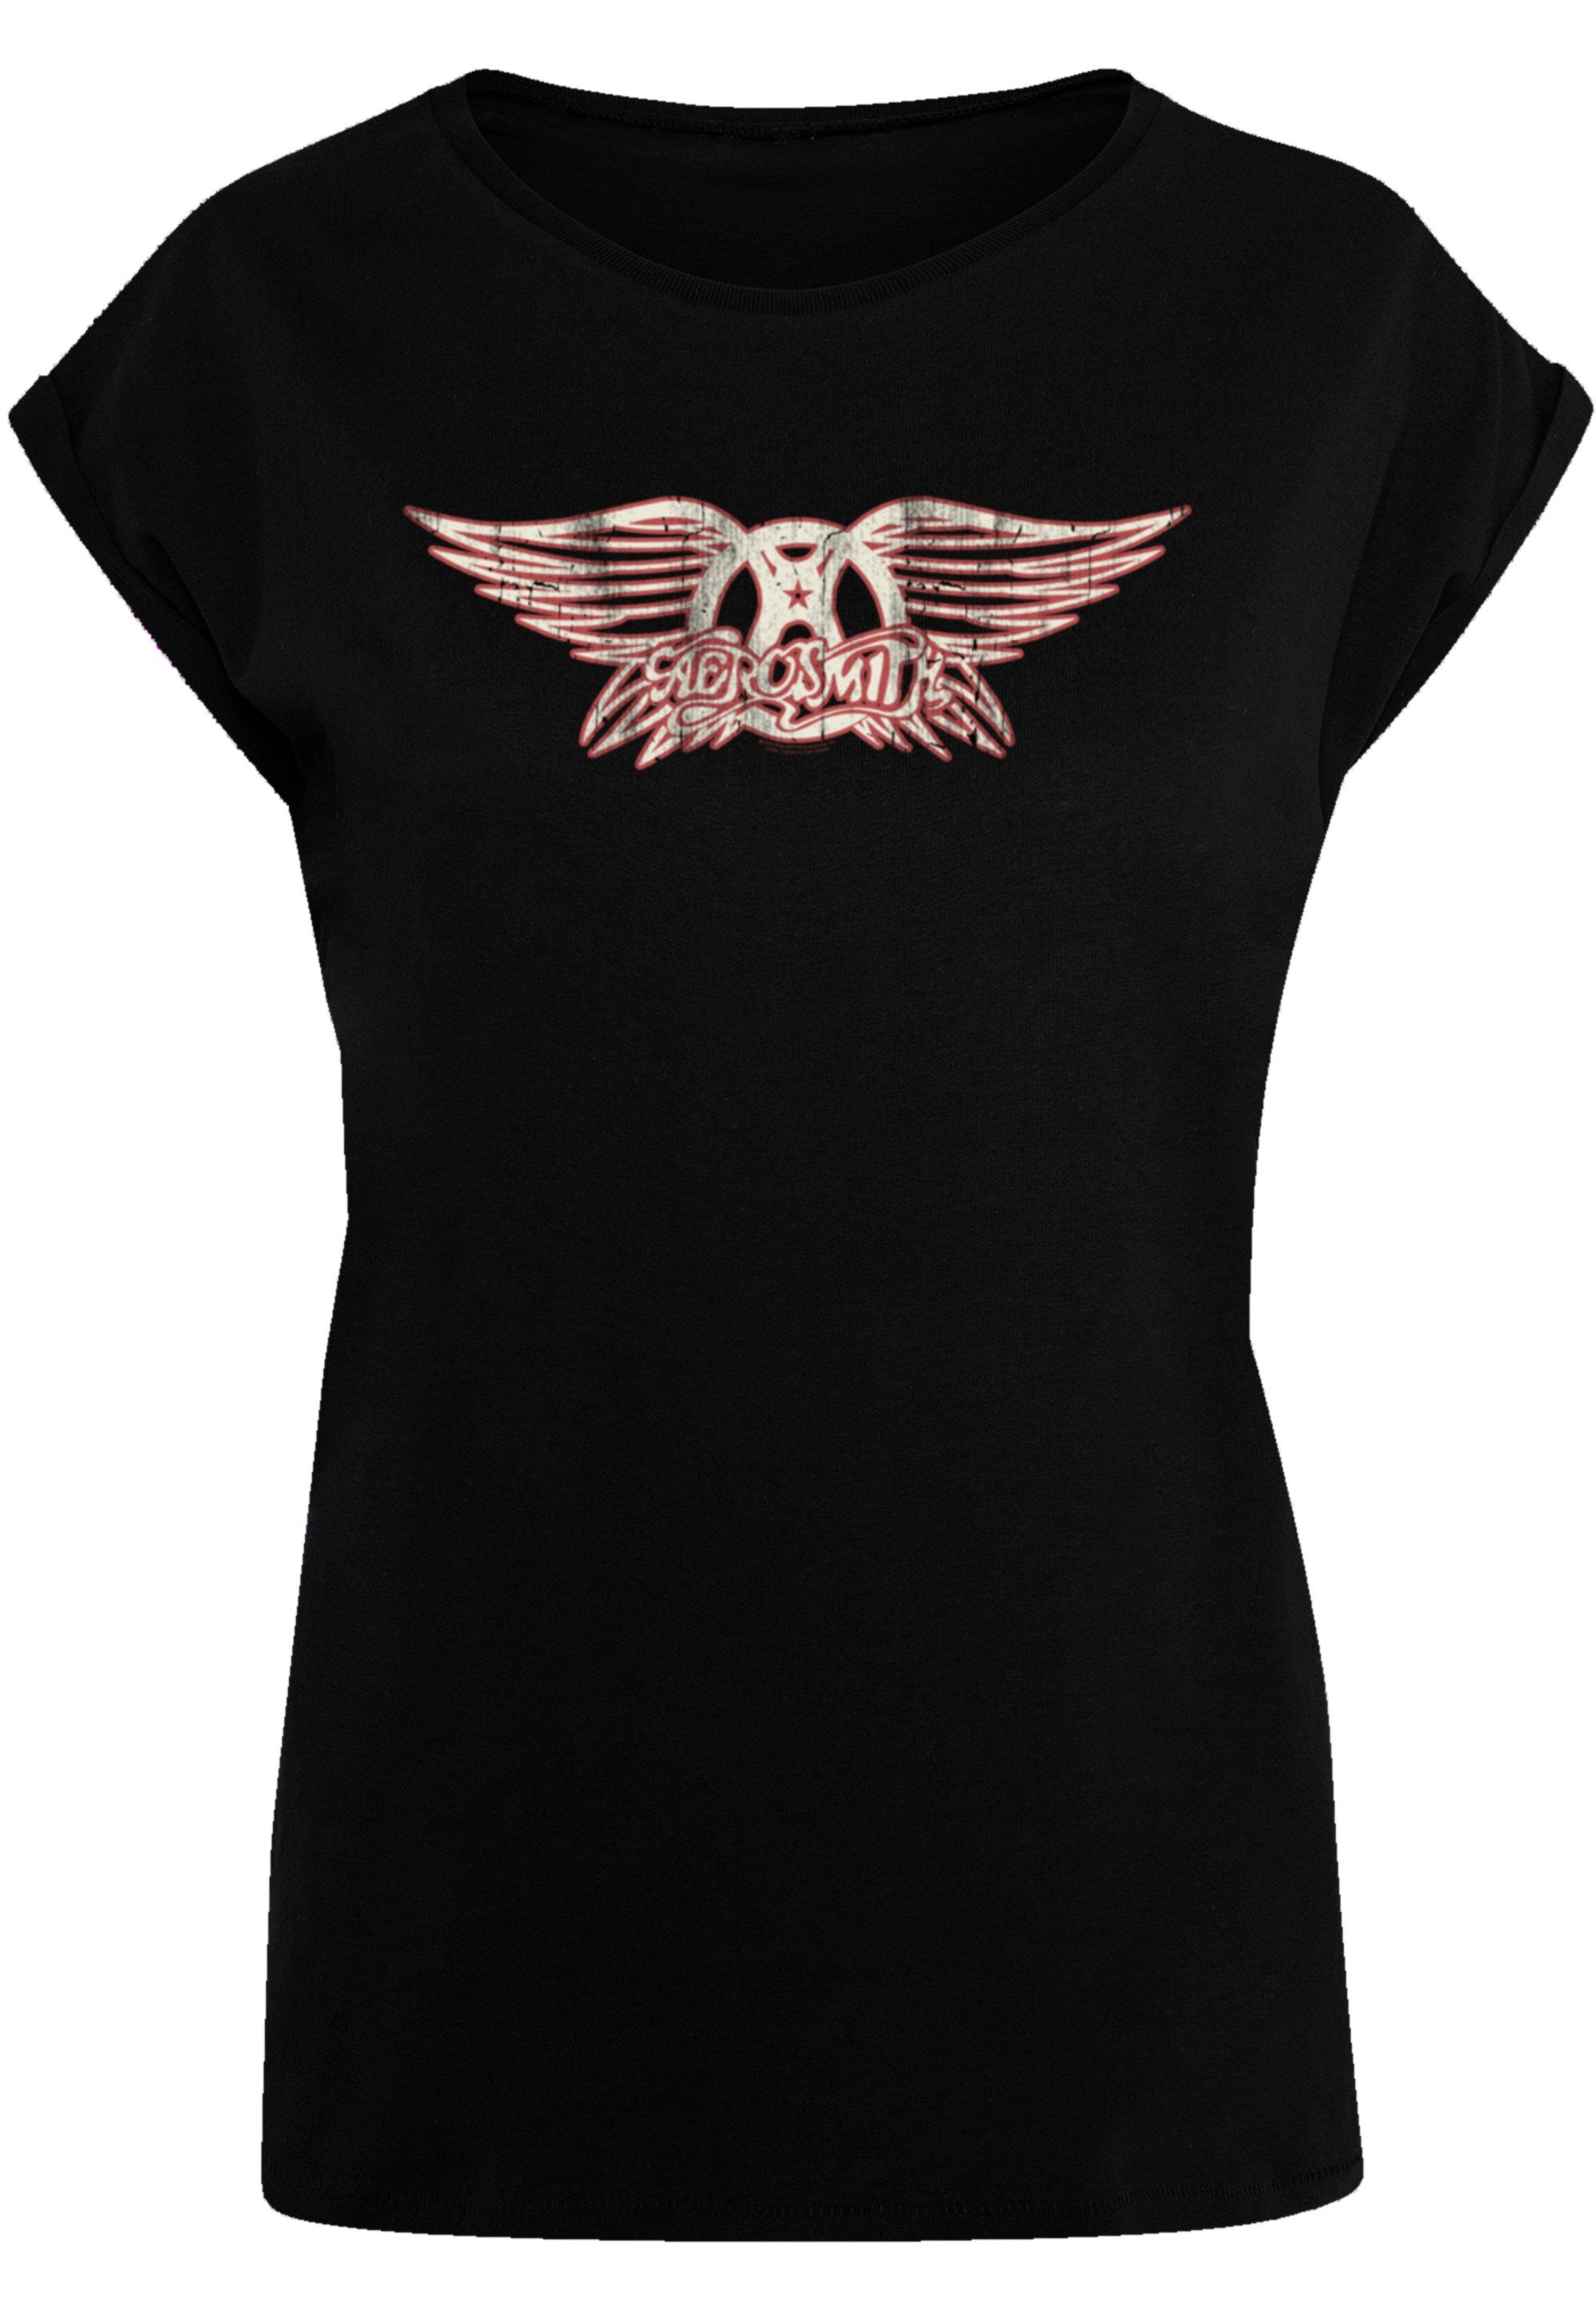 F4NT4STIC T-Shirt Aerosmith Rock weicher Band Qualität, Logo mit Baumwollstoff Band, Tragekomfort Rock-Musik, hohem Premium Sehr